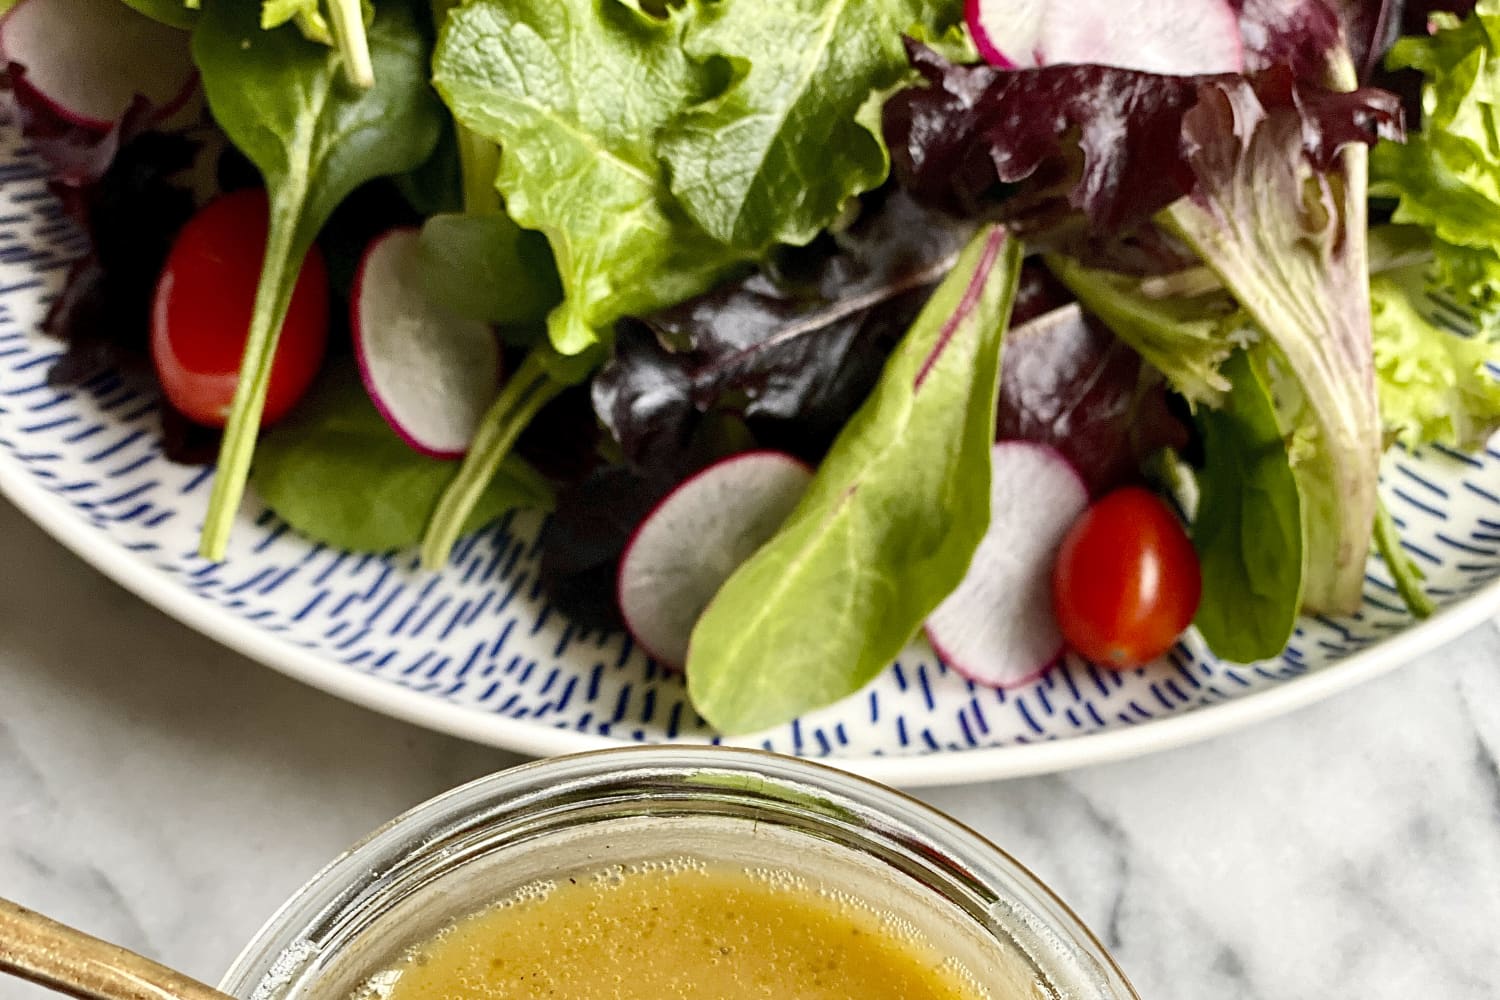 18 công thức chế biến món salad đơn giản nhất của chúng tôi